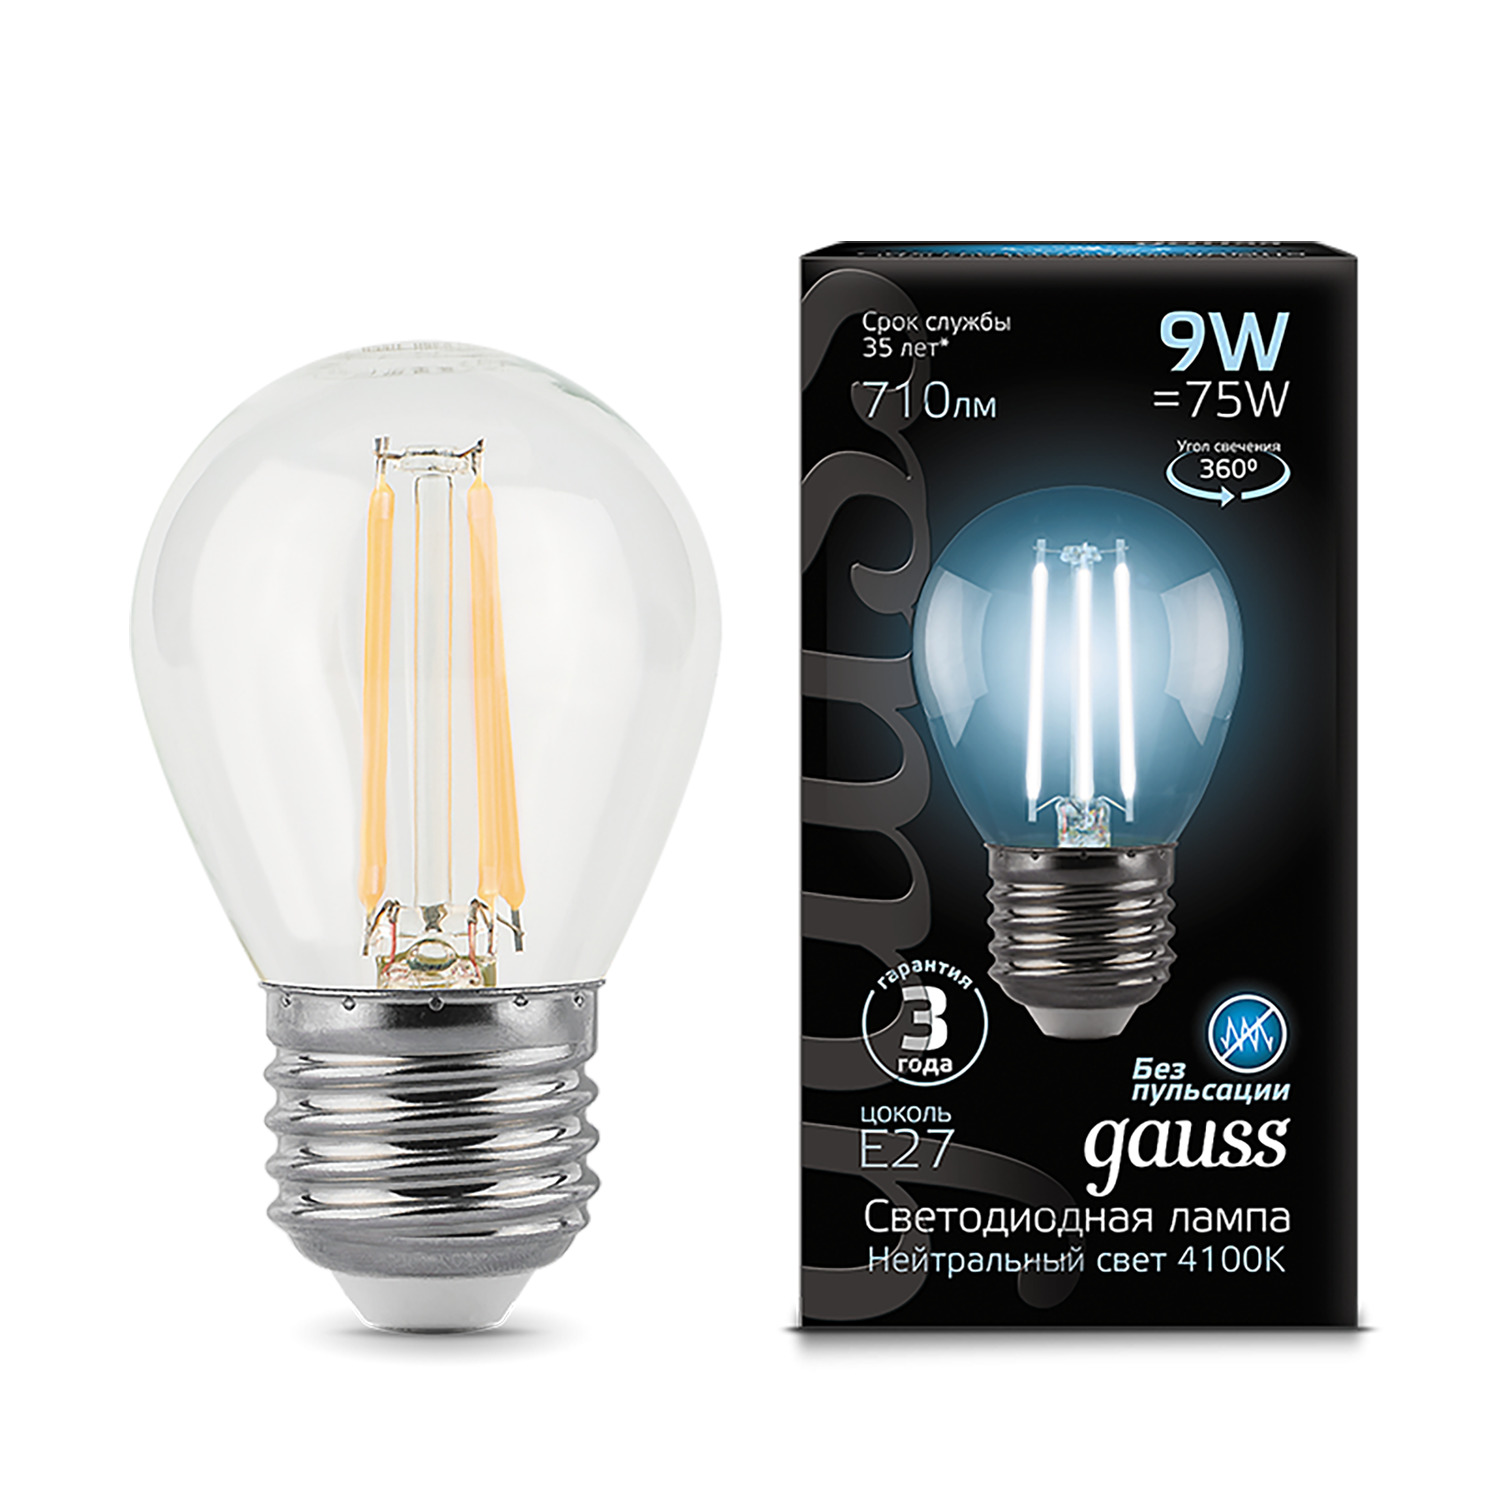 лампа gauss led filament шар opal e27 5w 450lm 4100k 1 10 50 Лампа Gauss LED Filament Шар E27 9W 710lm 4100K 1/10/50